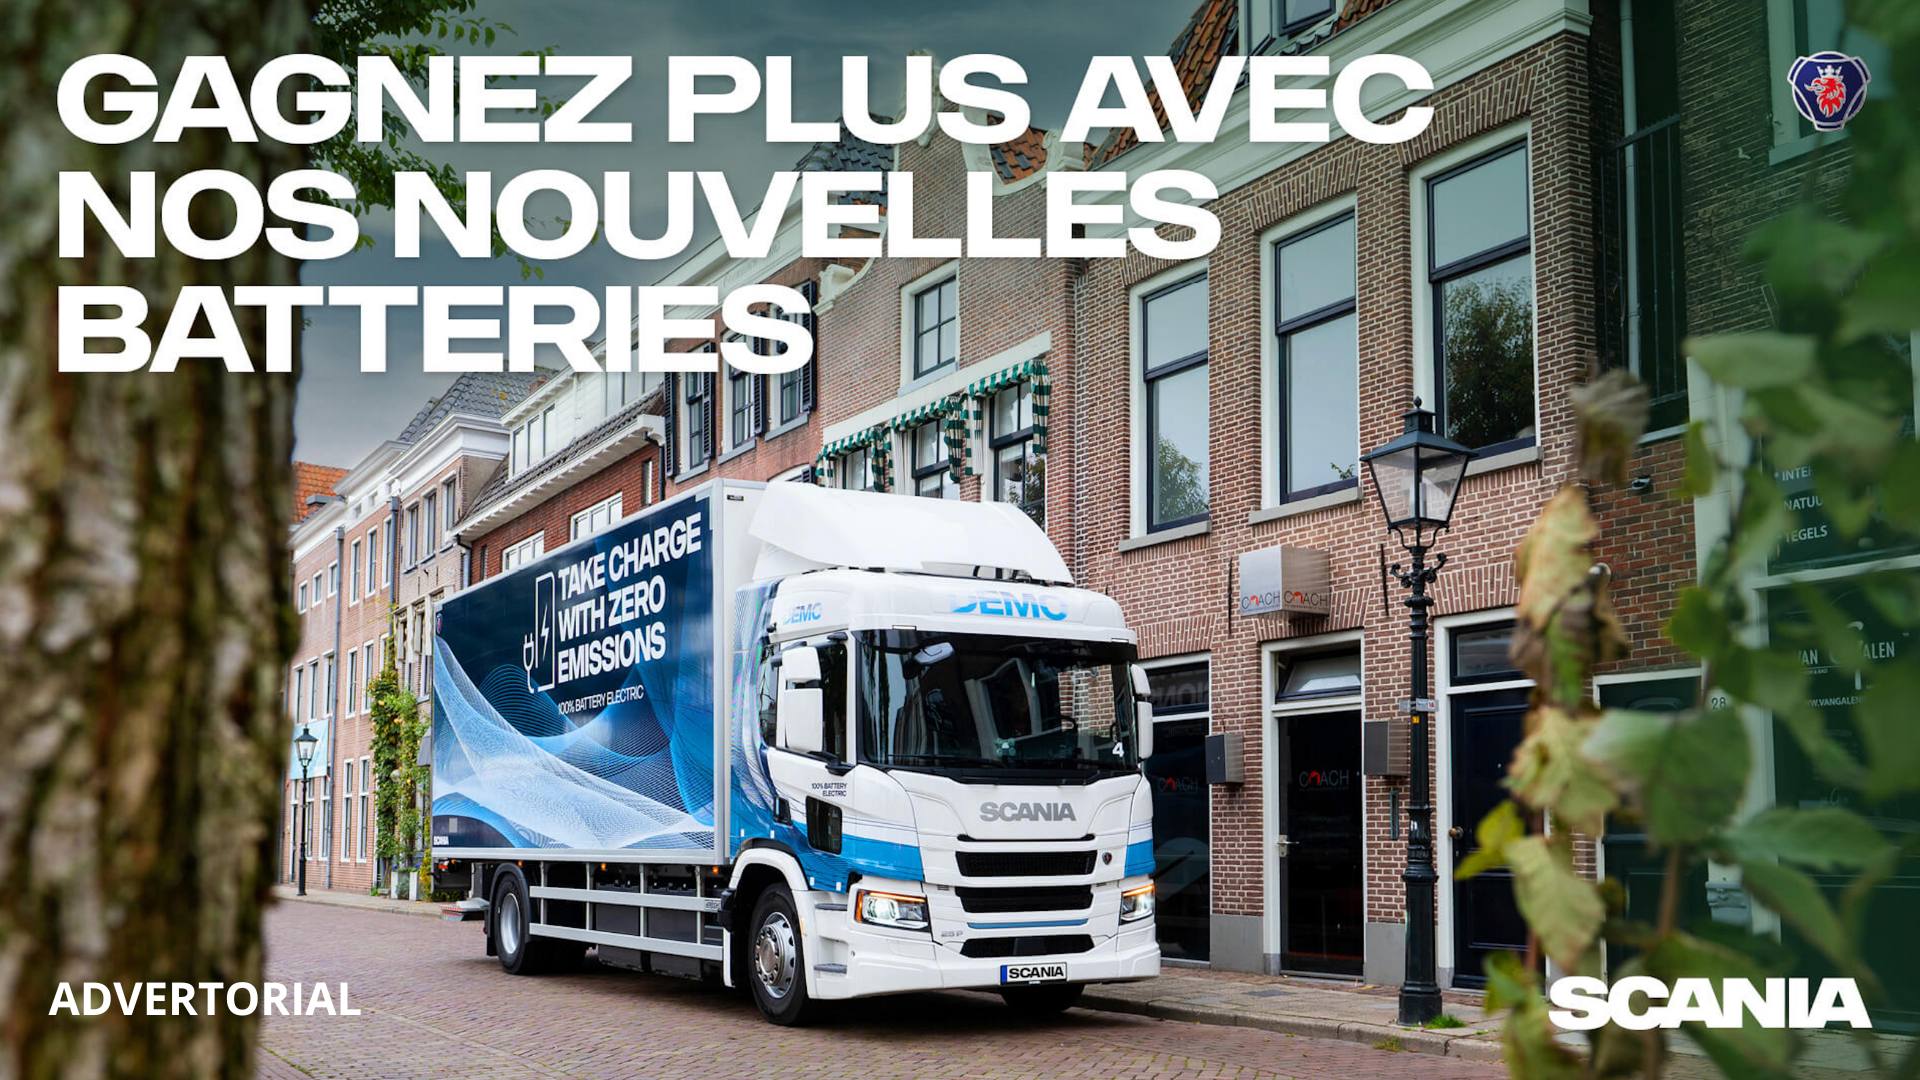 Scania continue d’élargir son offre de véhicules électriques à batterie et de services associés